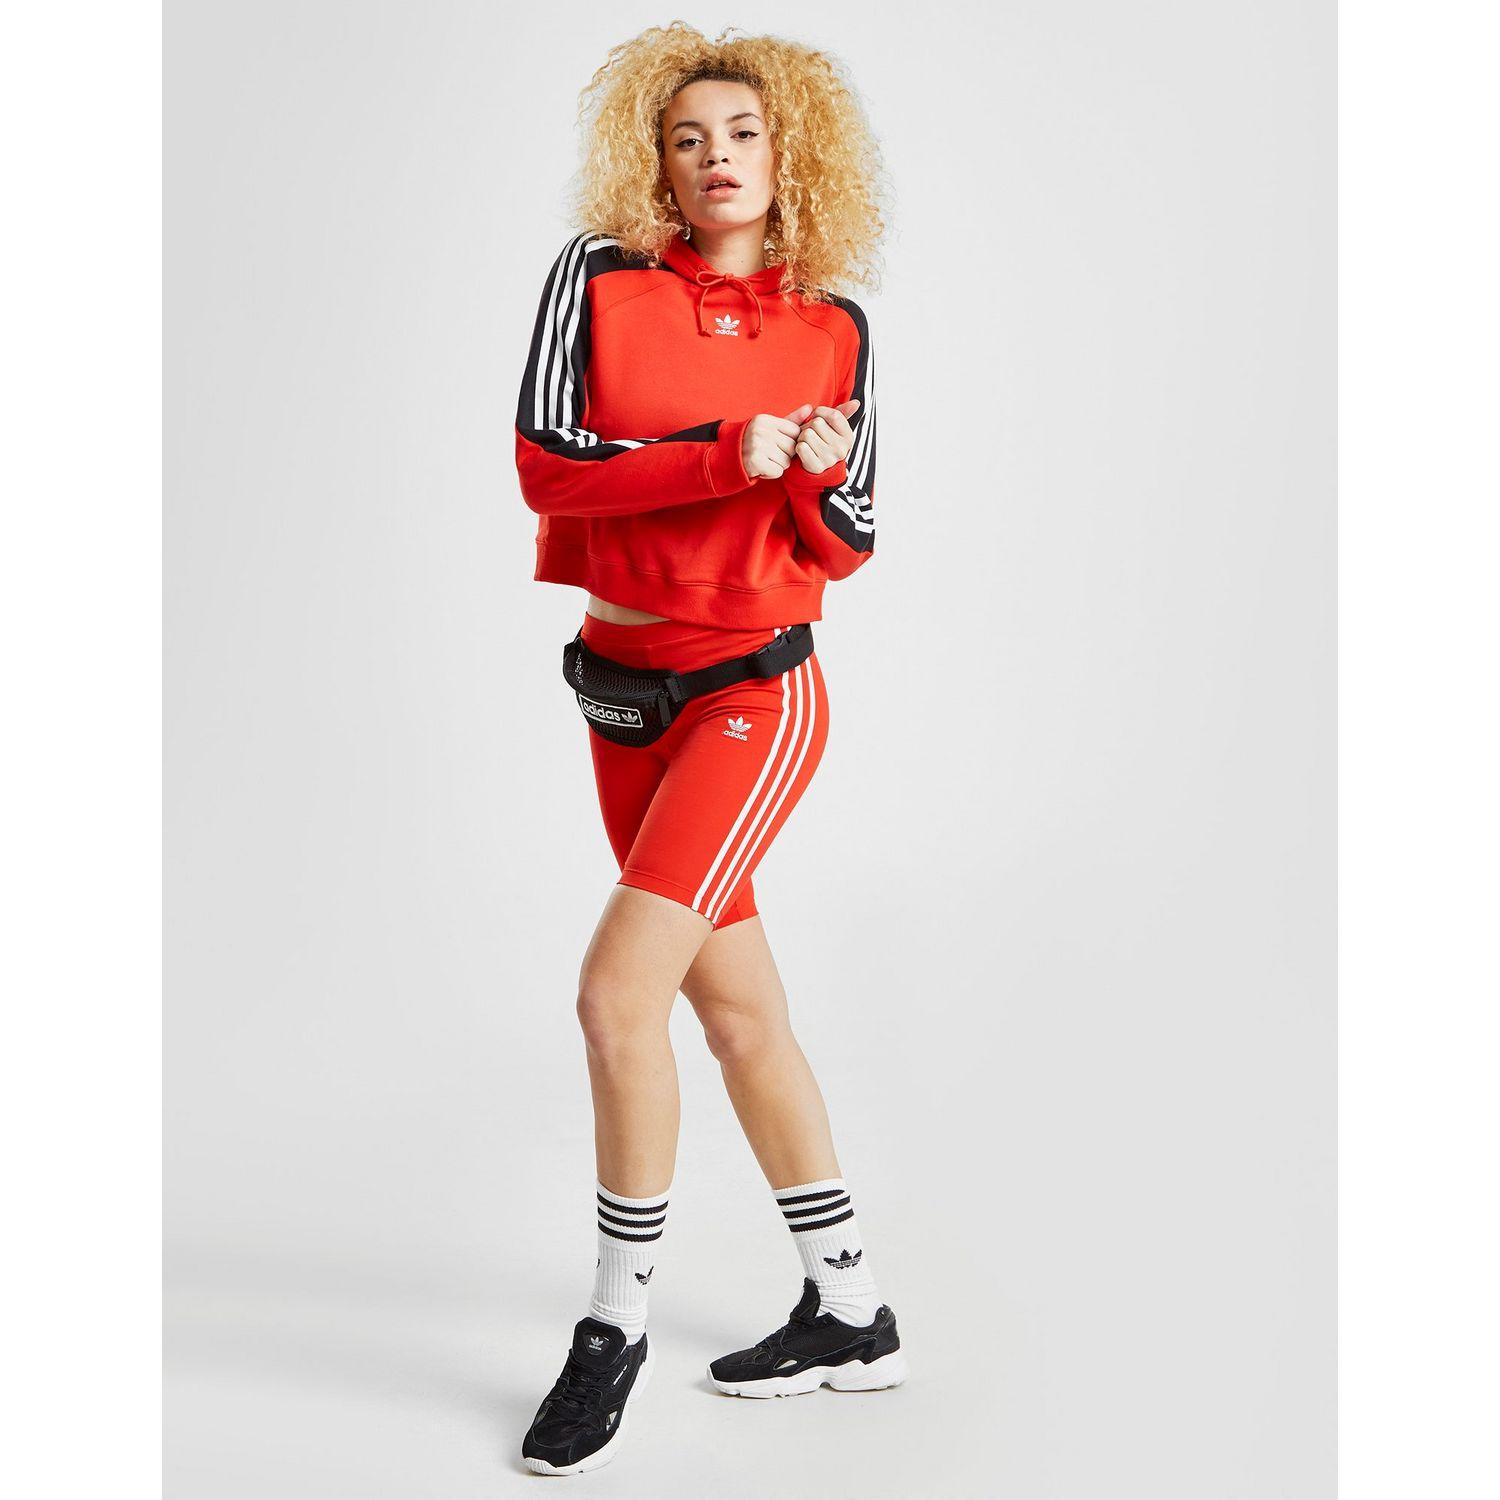 red adidas cycle shorts